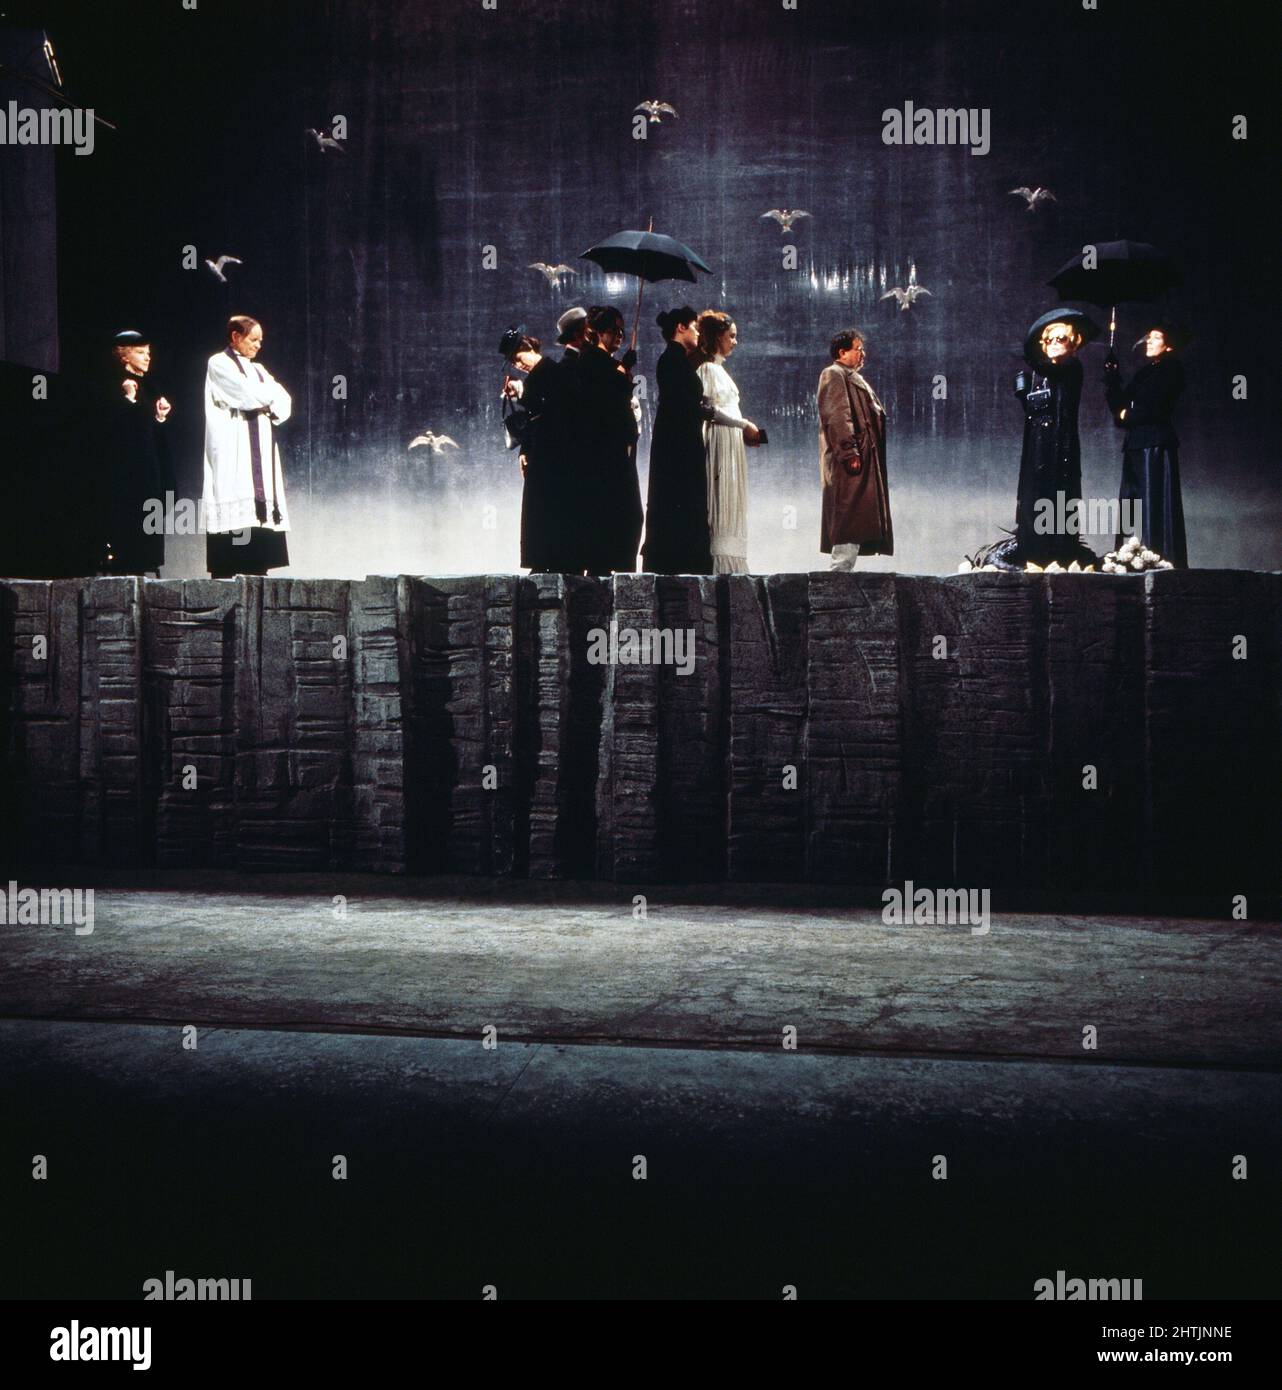 Die See, Fernsehfassung vom Theaterstück nach dem Roman von Edward Bond, Deutschland 1974, Regie: Luc Bondy, Szenenfoto: Totale auf die Bühne. Stock Photo